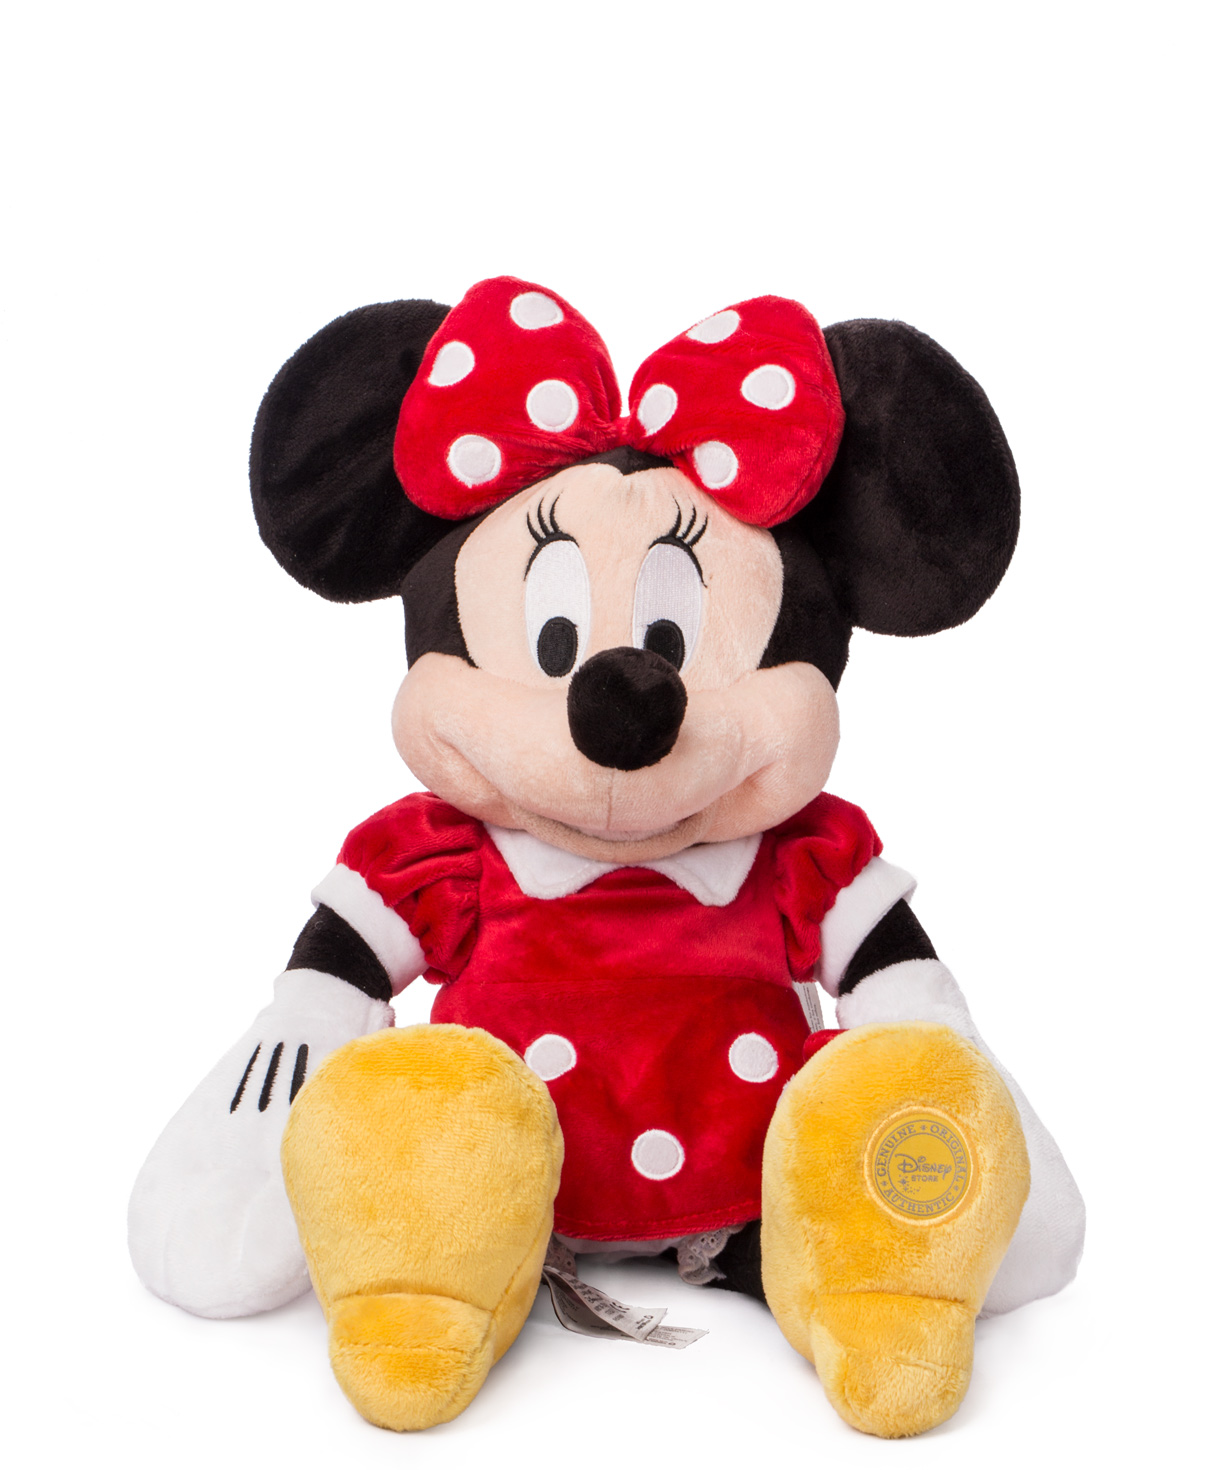 Խաղալիք Միննի Մաուս փափուկ, Disney